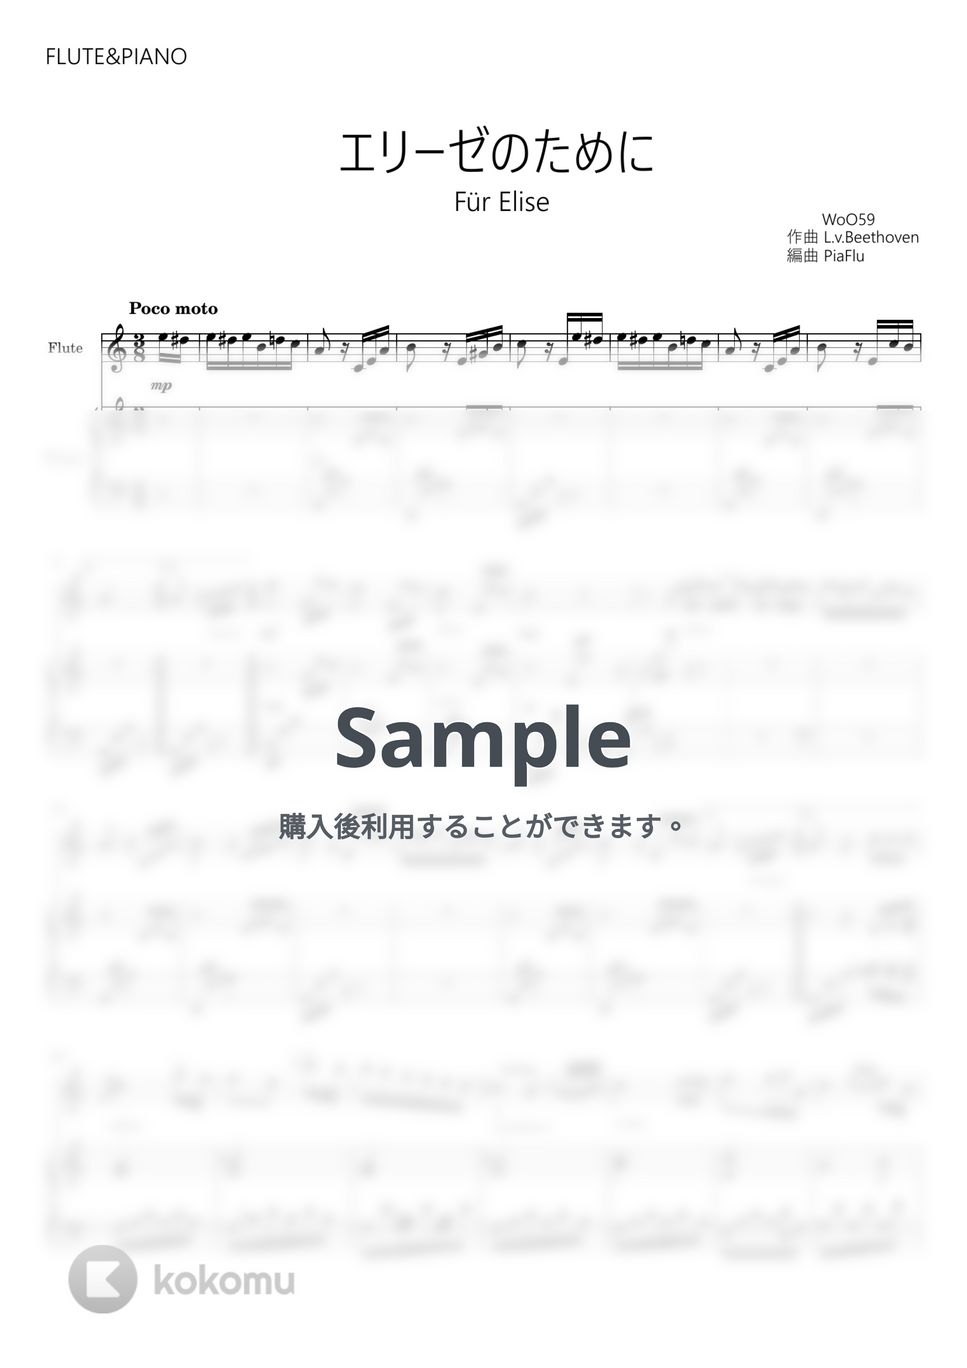 ベートーヴェン - エリーゼのために (フルート&ピアノ伴奏) by PiaFlu